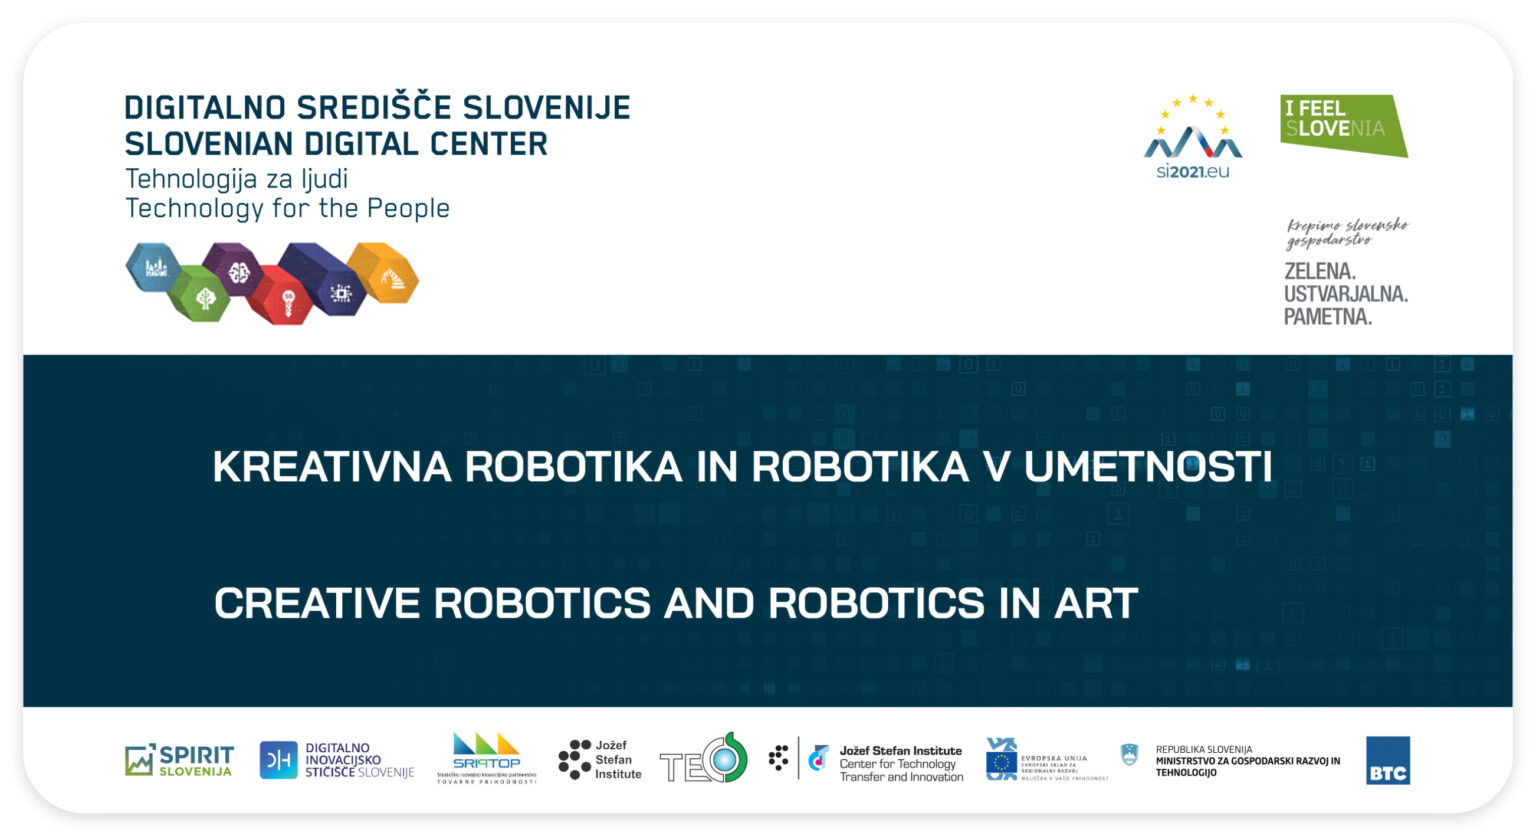 114 Spletna Stran Kreativna Robotika In Robotika V Umetnosti b 1 1536x836